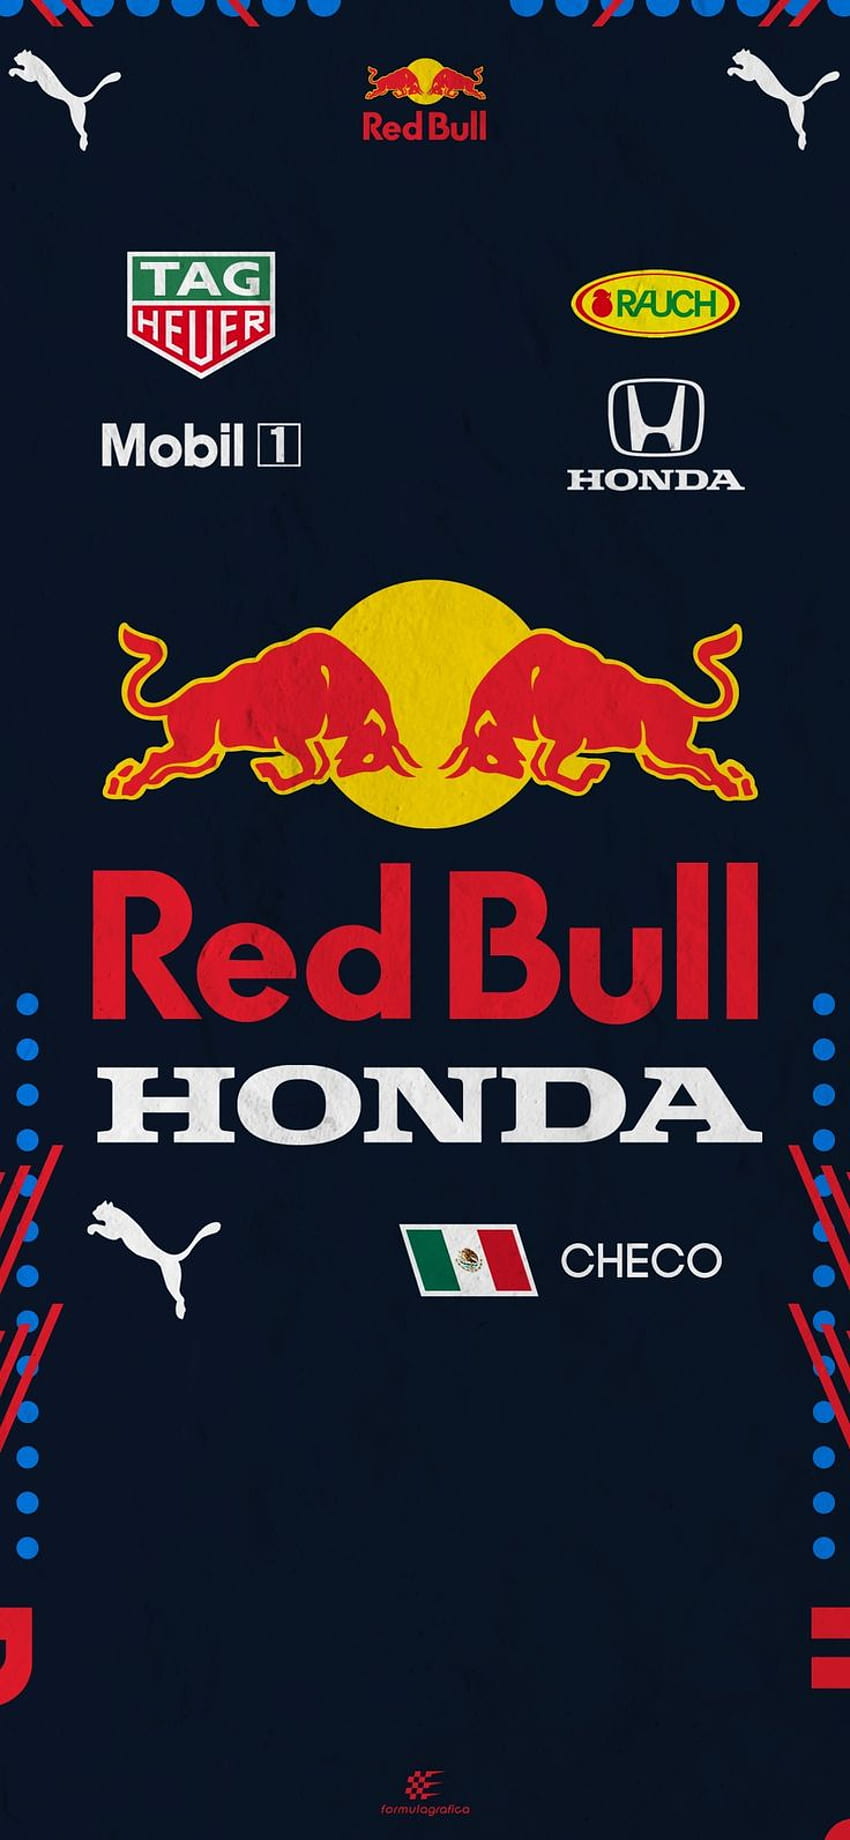 Baju balap Sergio Perez Jika Anda suka ini, jangan lupa bagikan dengan teman dan bantuan Anda di tahun 2021. Red bull f1, Sergio perez, Red bull racing, Checo wallpaper ponsel HD